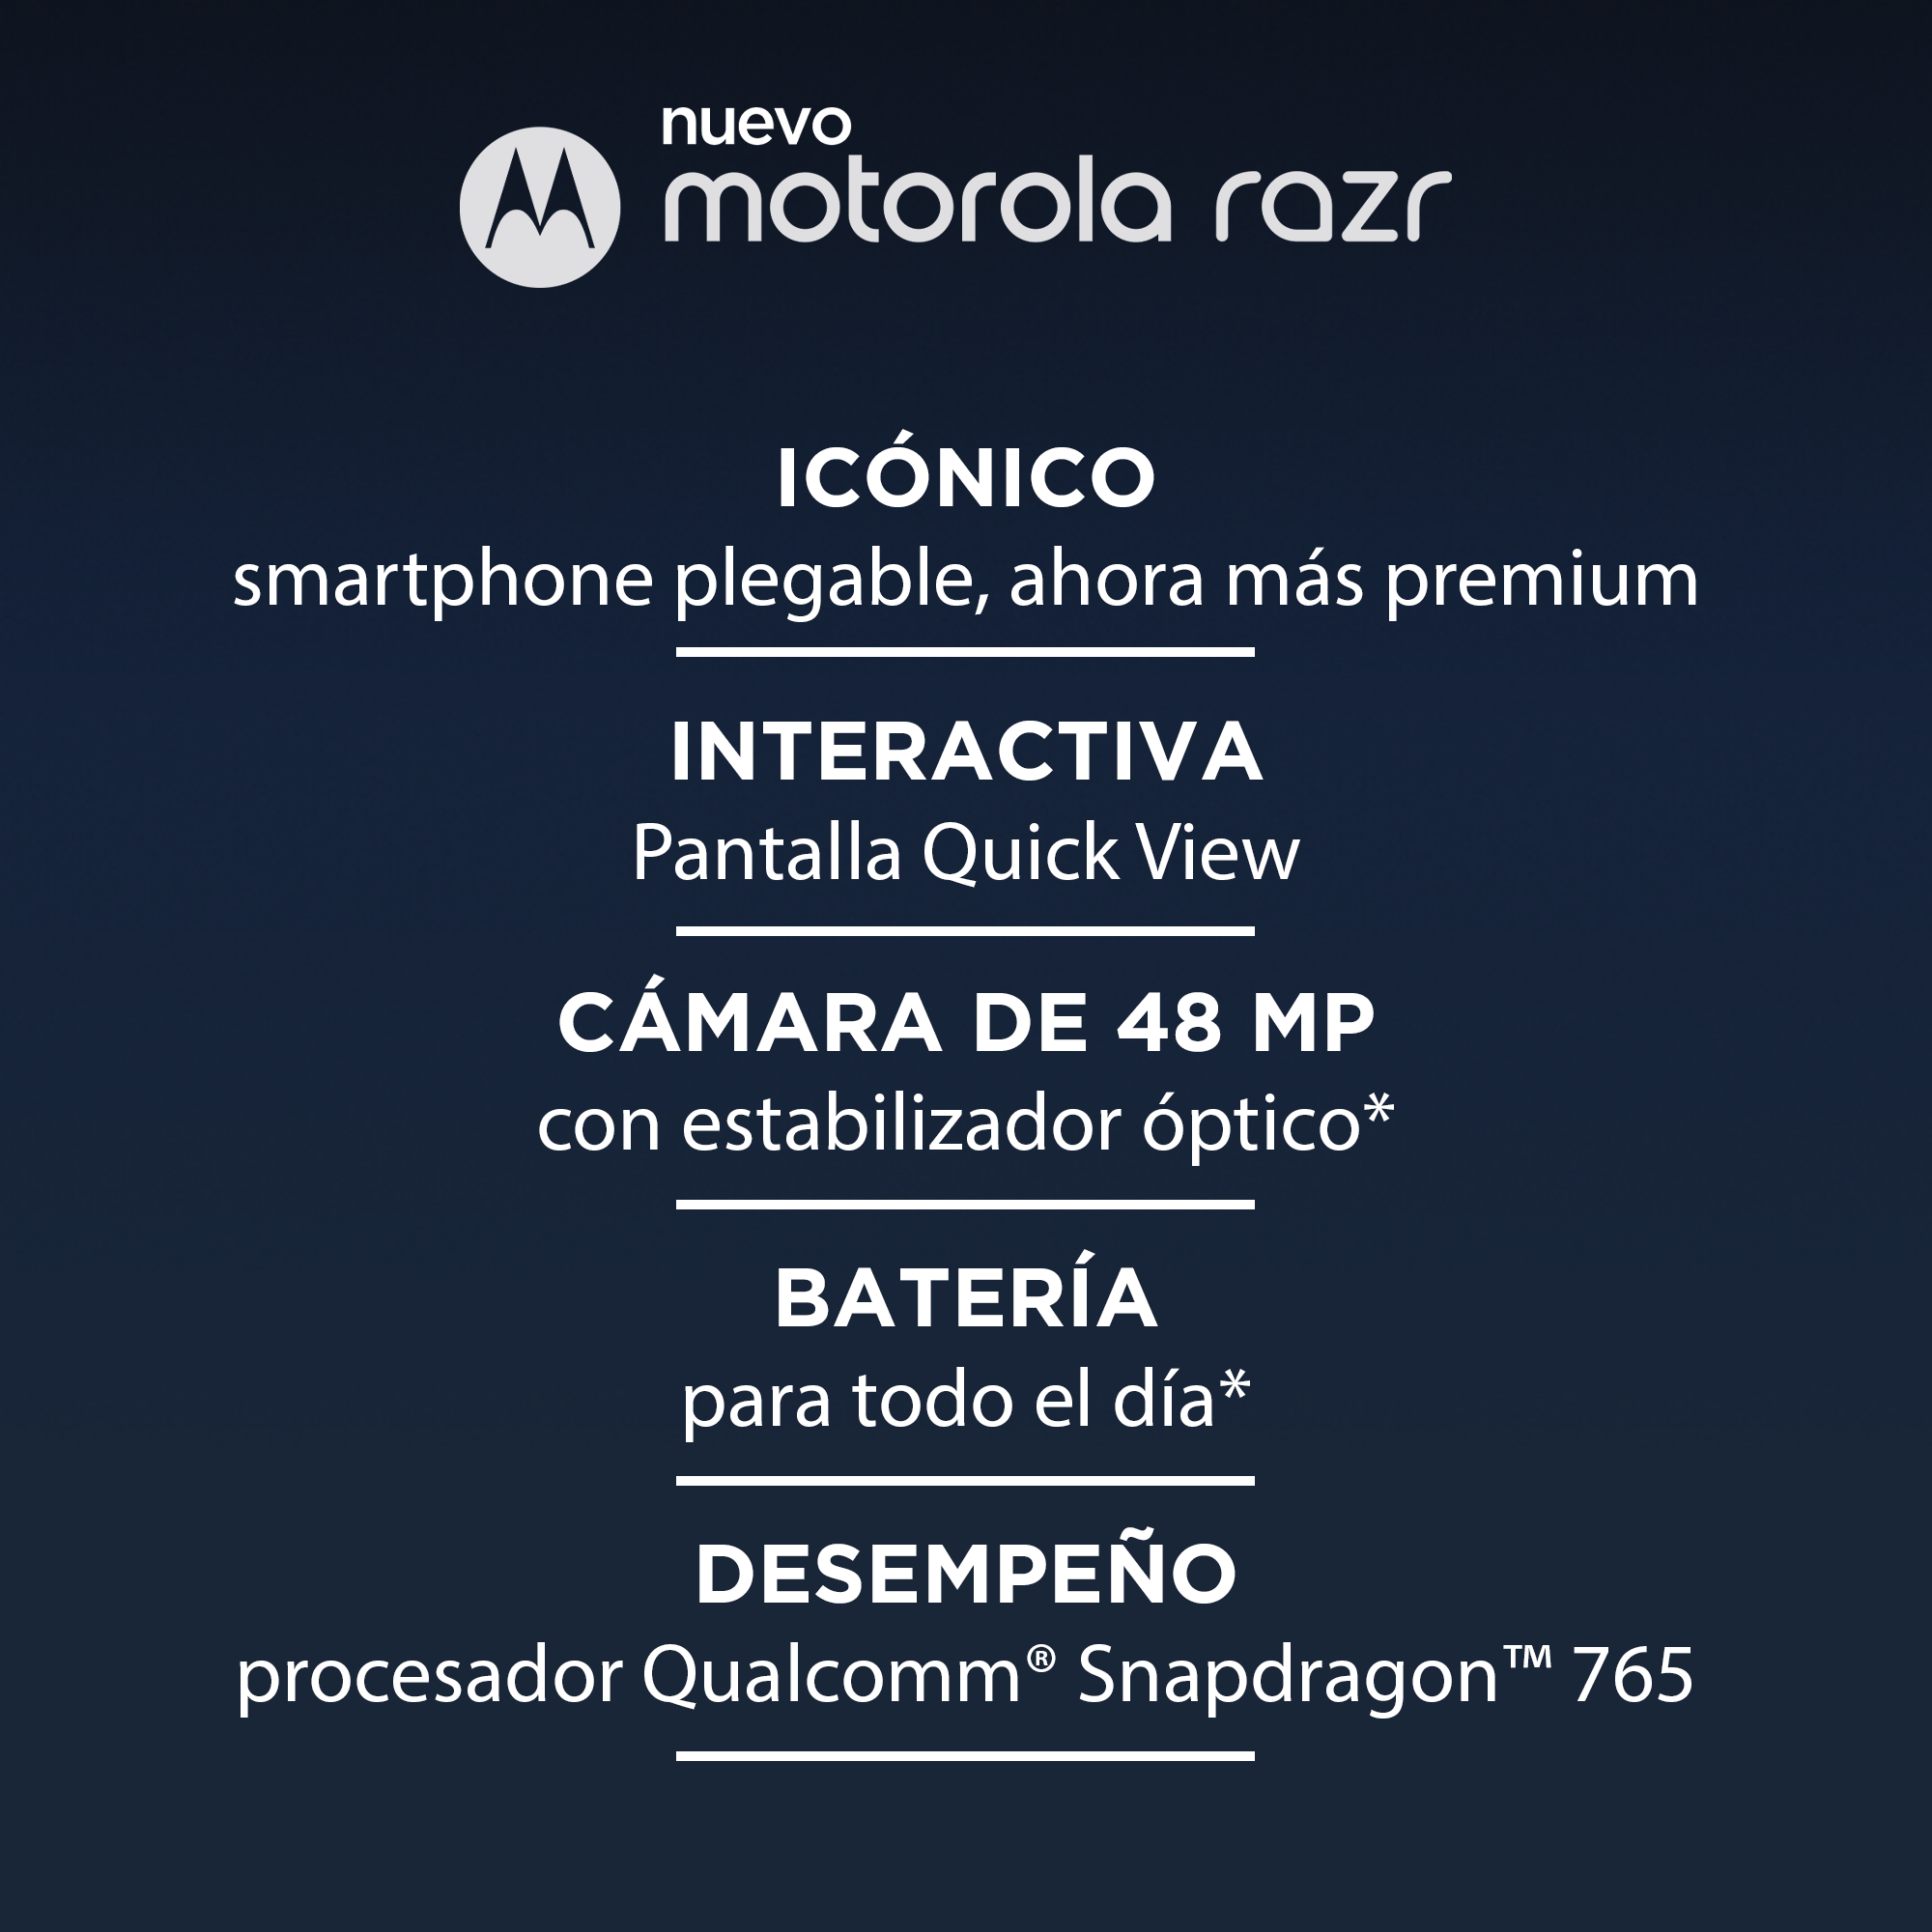 Motorola Razr 256 GB ROM 8GB RAM